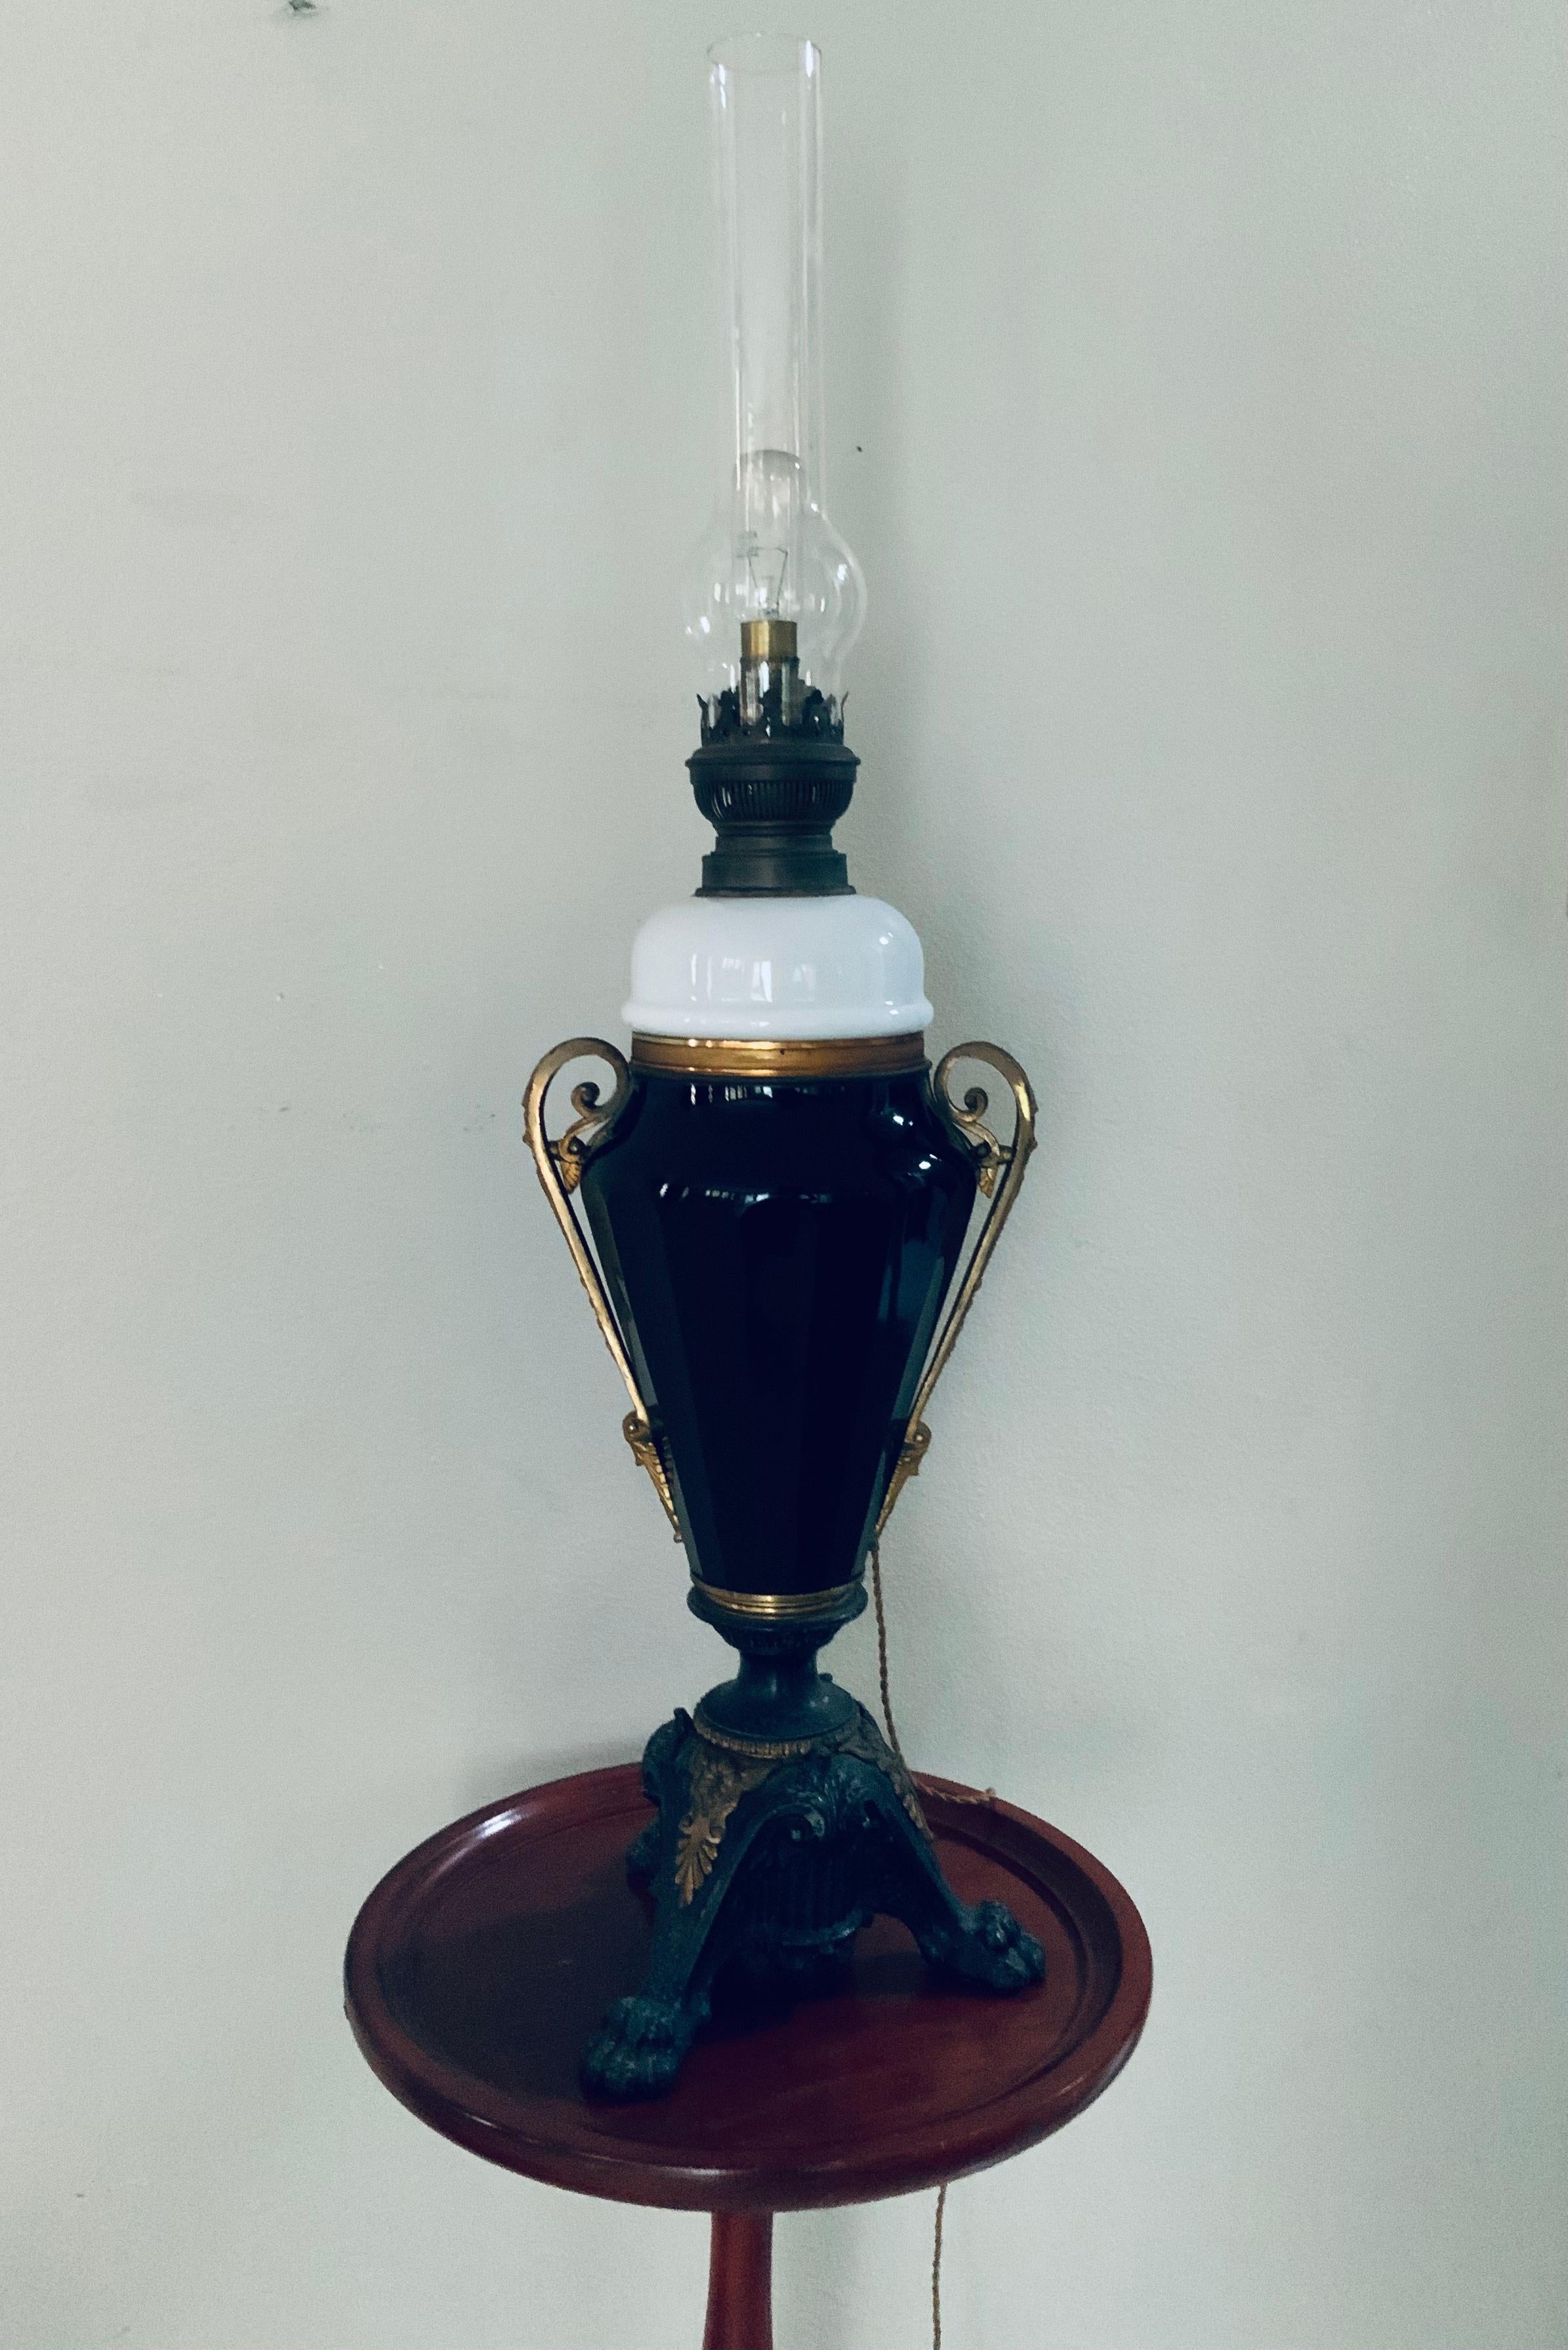 Dies ist eine große Öllampe im Empire-Stil, die in eine elektrische Lampe umgewandelt wurde. Sie besteht aus einem zylindrischen, langen, klaren Kaminlampenschirm, der an einer Brennerhalterung aus Messing befestigt ist; diese wiederum ist mit einem